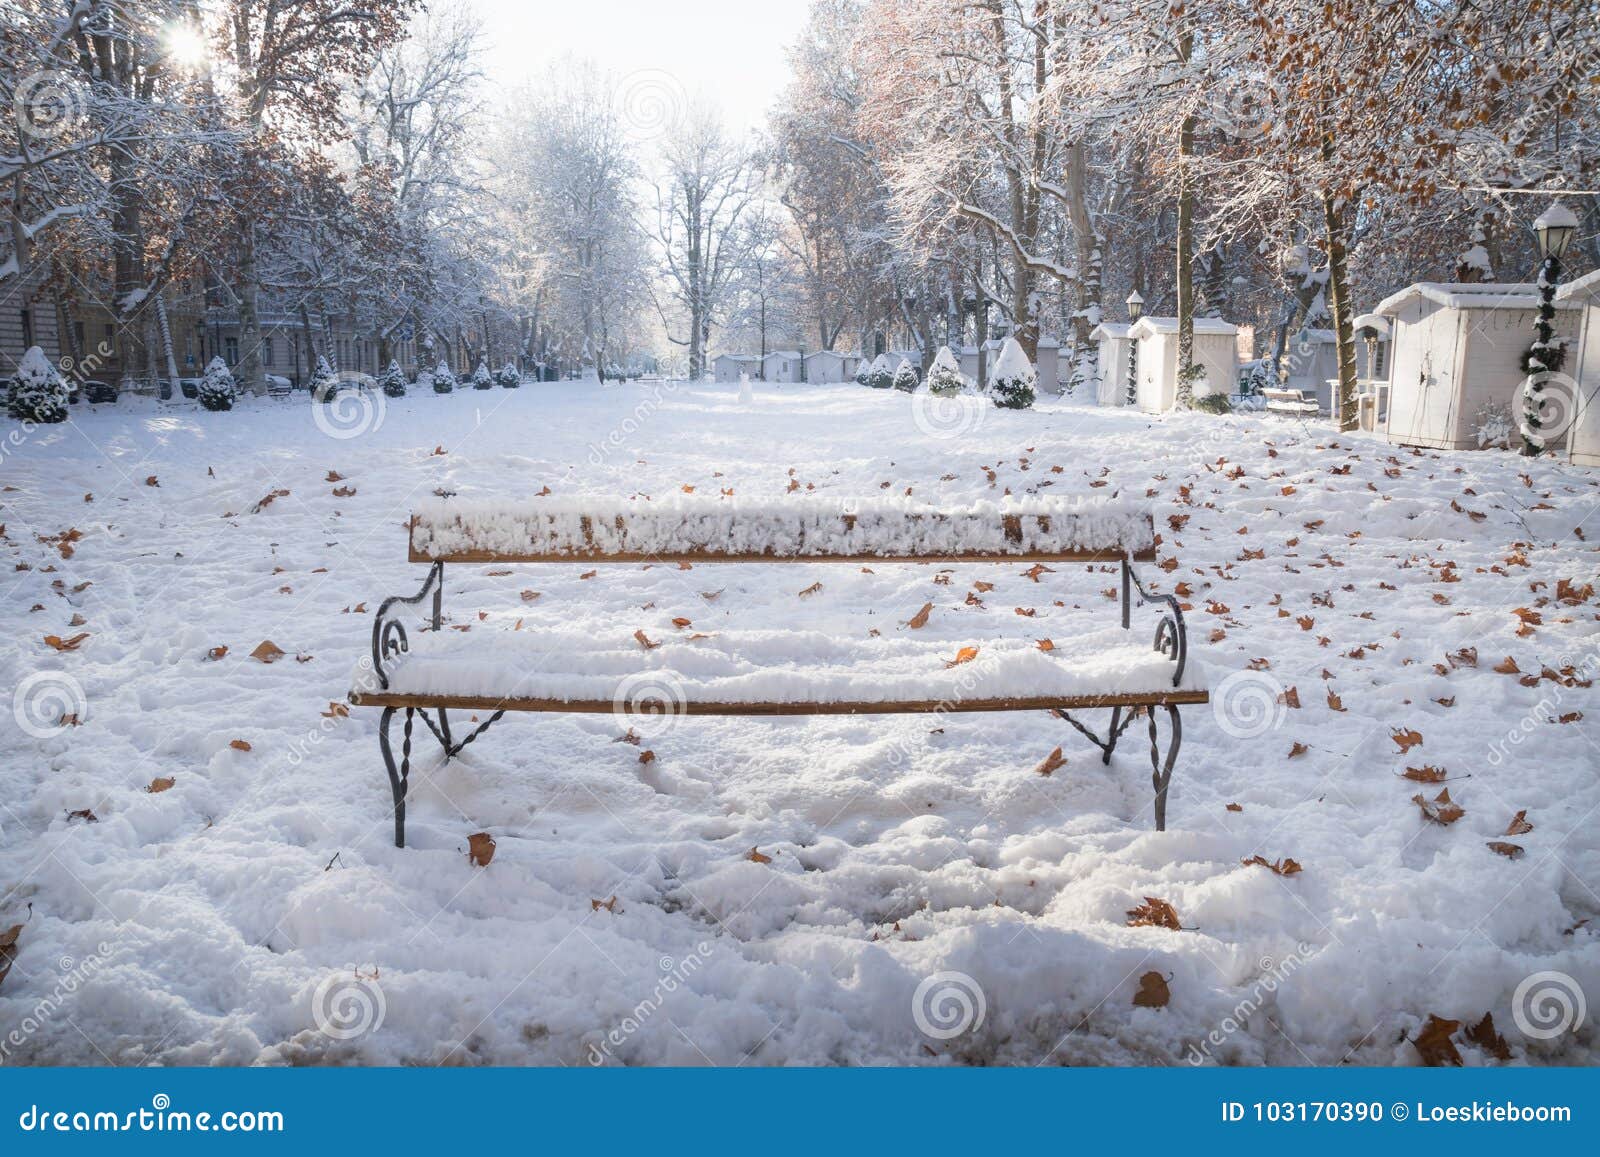 下雪的公园长椅在zrinjevac公园在萨格勒布在冬天 克罗地亚 欧洲库存照片 图片包括有下雪的公园长椅在zrinjevac公园在萨格勒布在冬天 克罗地亚 欧洲